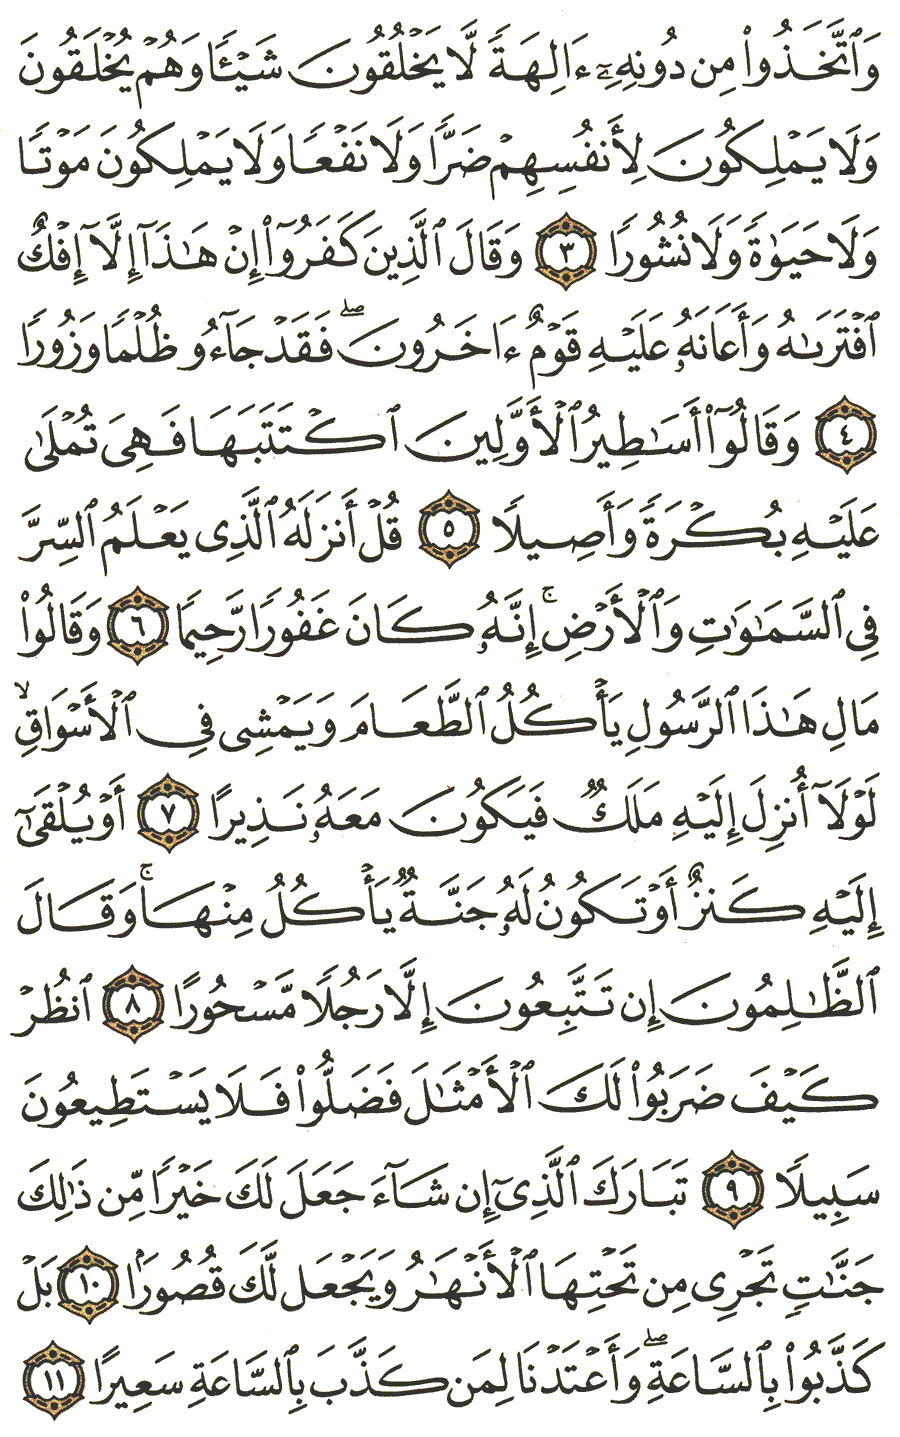 الصفحة رقم 360  من القرآن الكريم مكتوبة من المصحف